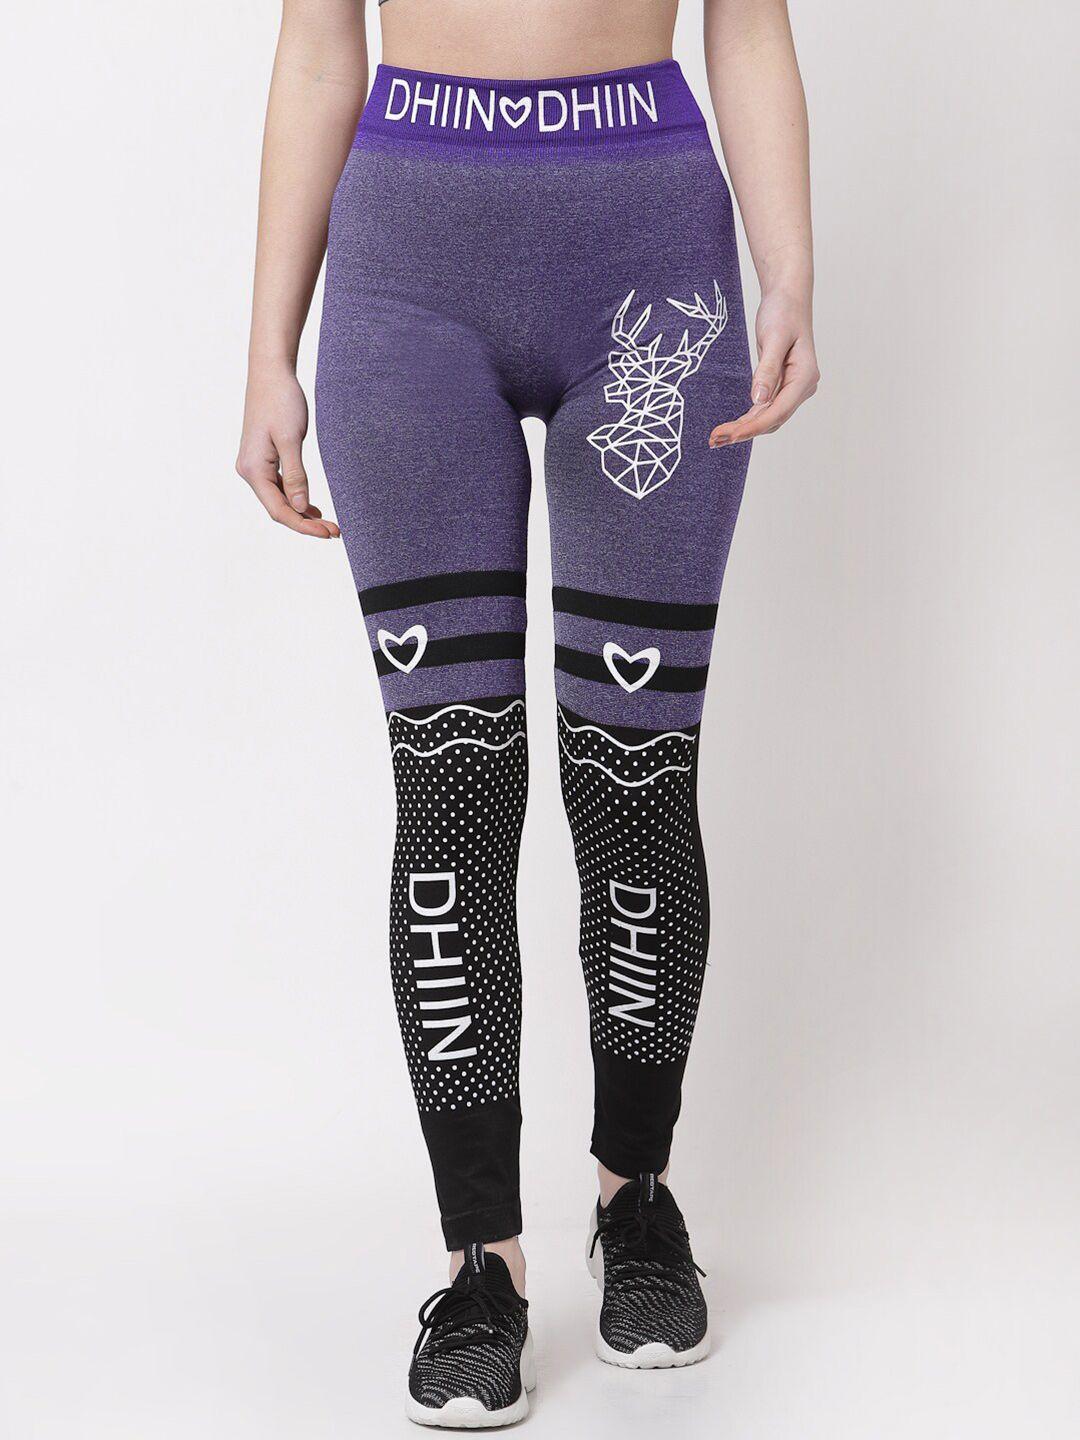 klotthe-women-purple-&-black-printed-skinny-fit-jeggings